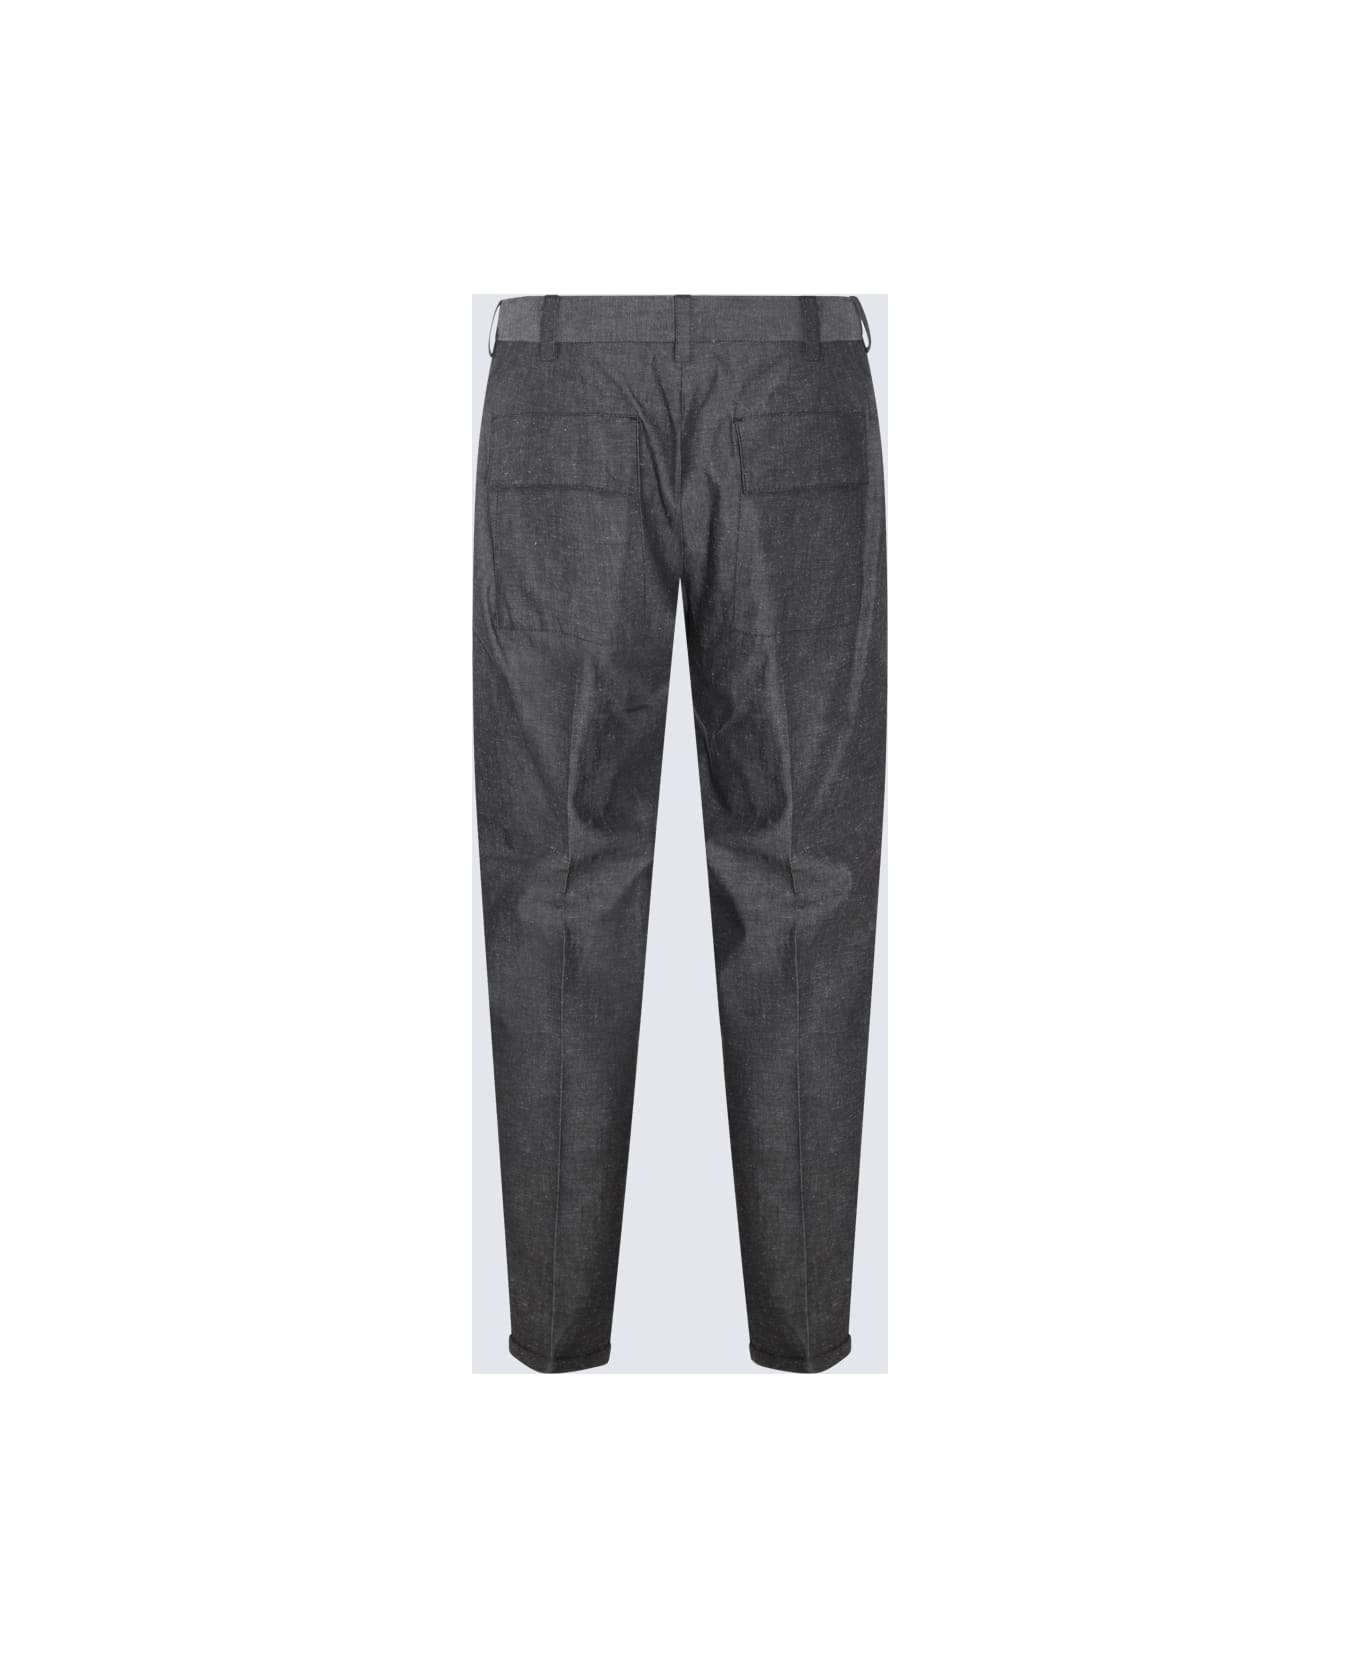 PT01 Grey Cotton Pants - Black